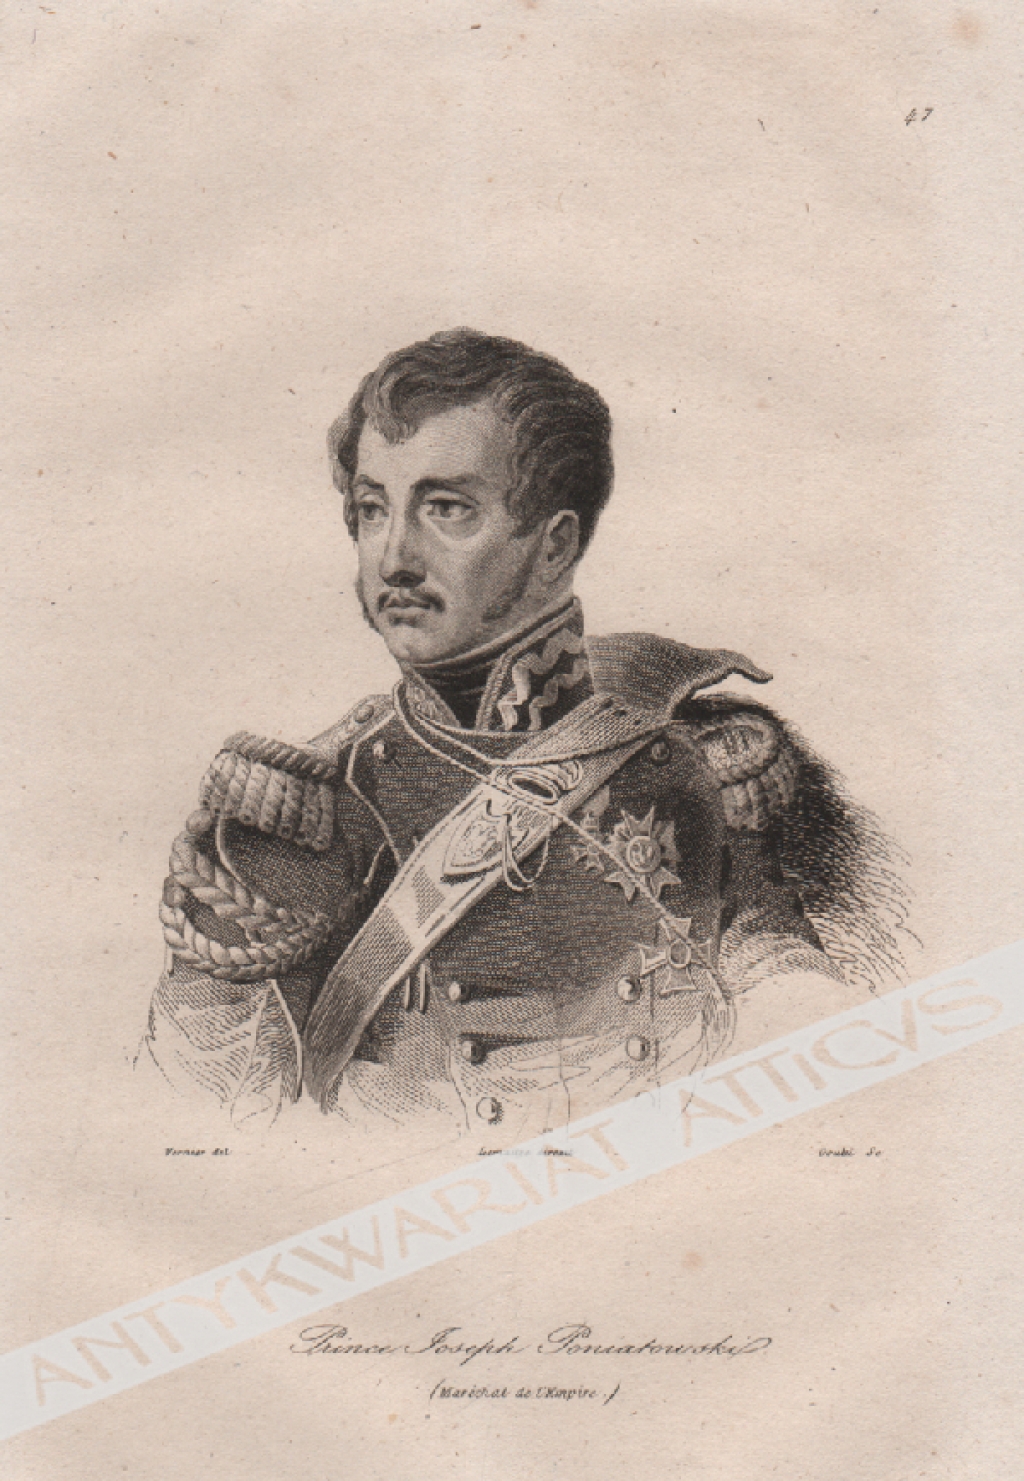 [rycina, 1840] Prince Joseph Poniatowski [książę Józef Poniatowski]